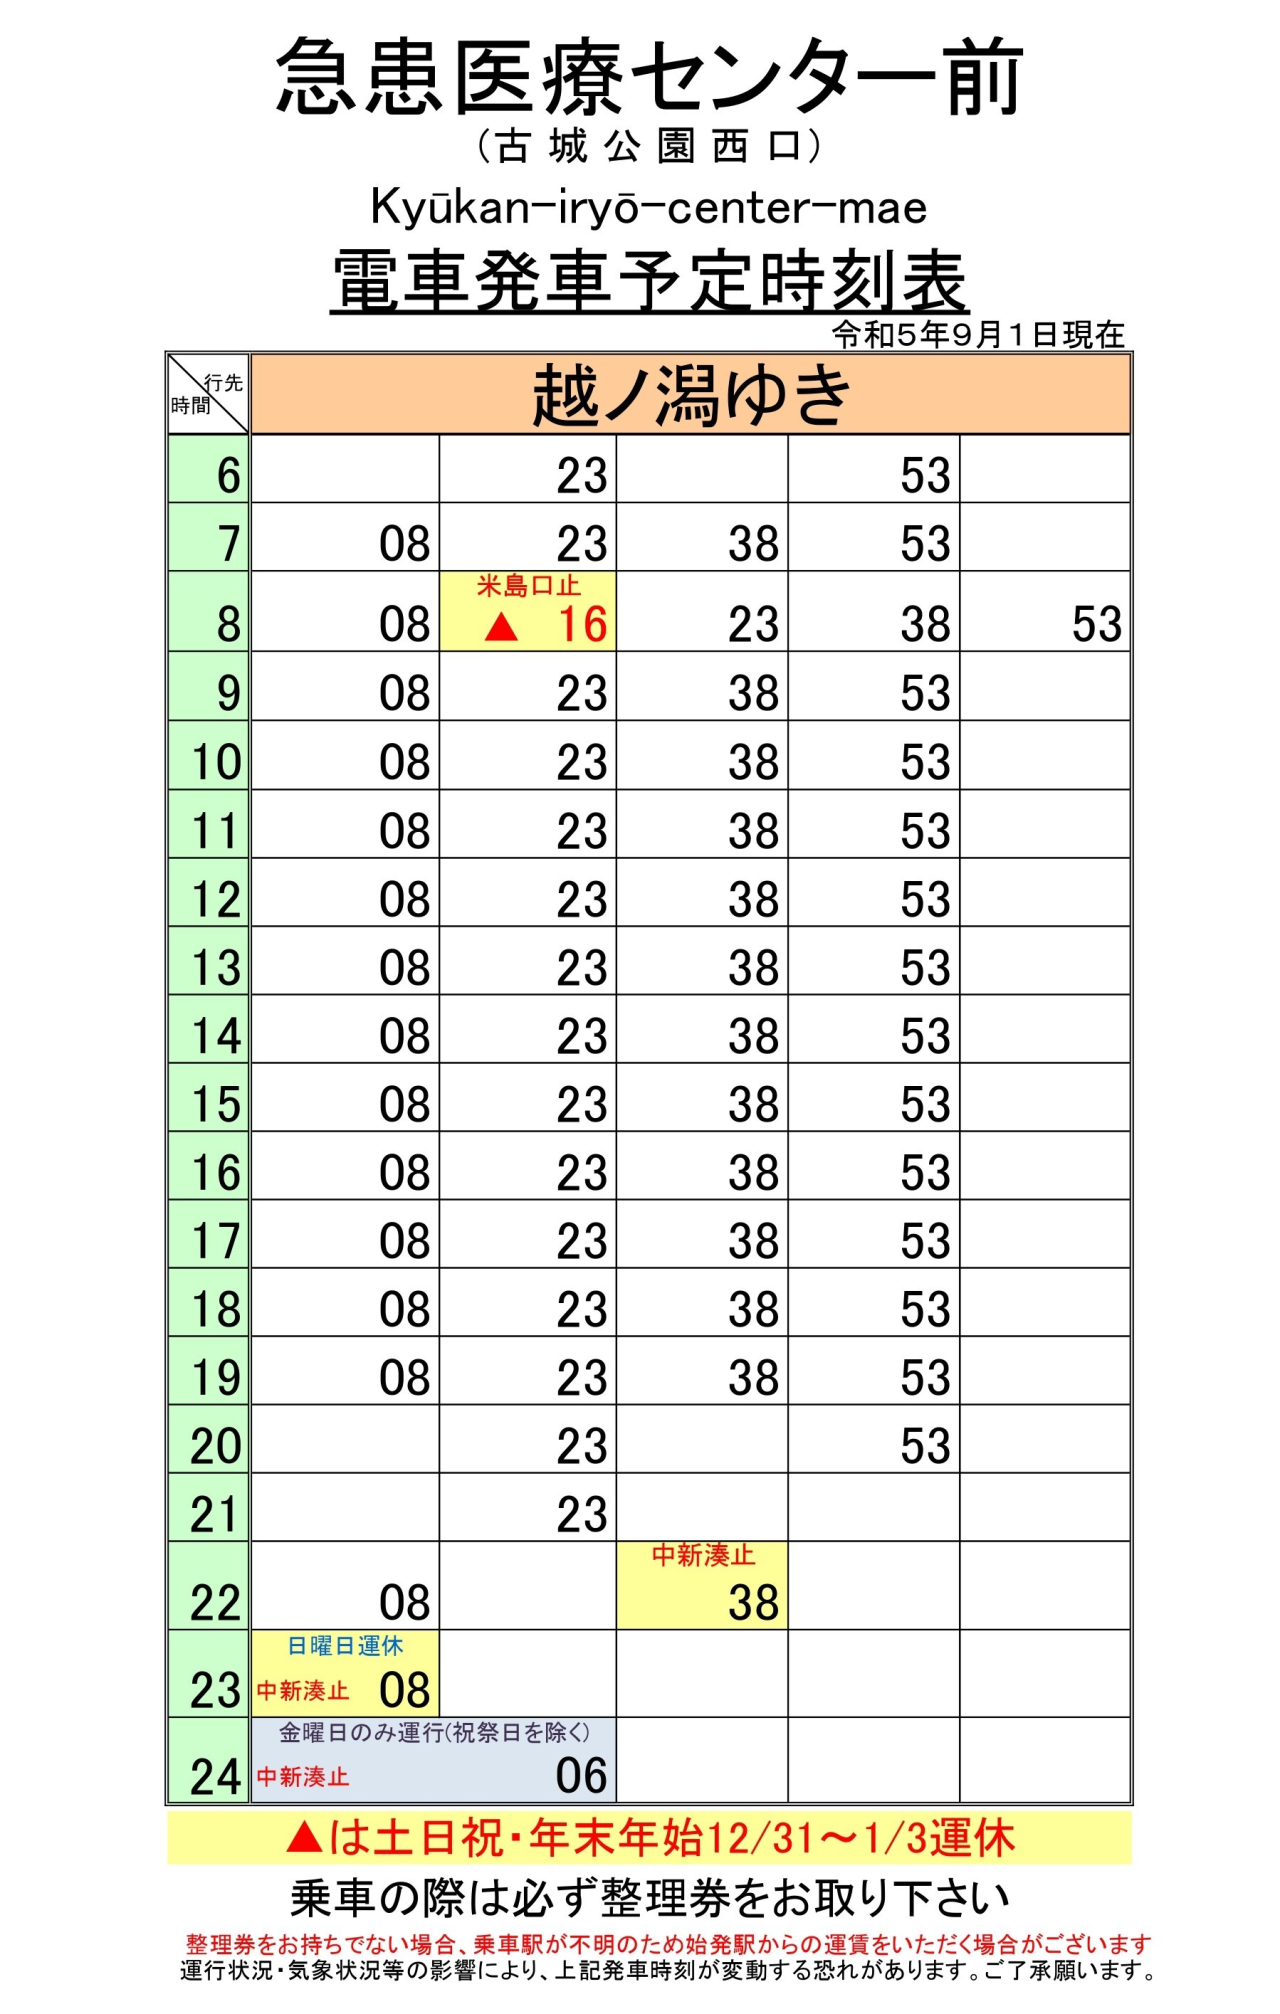 最新5.9.1急患医療(下り)_page-0001 (1)